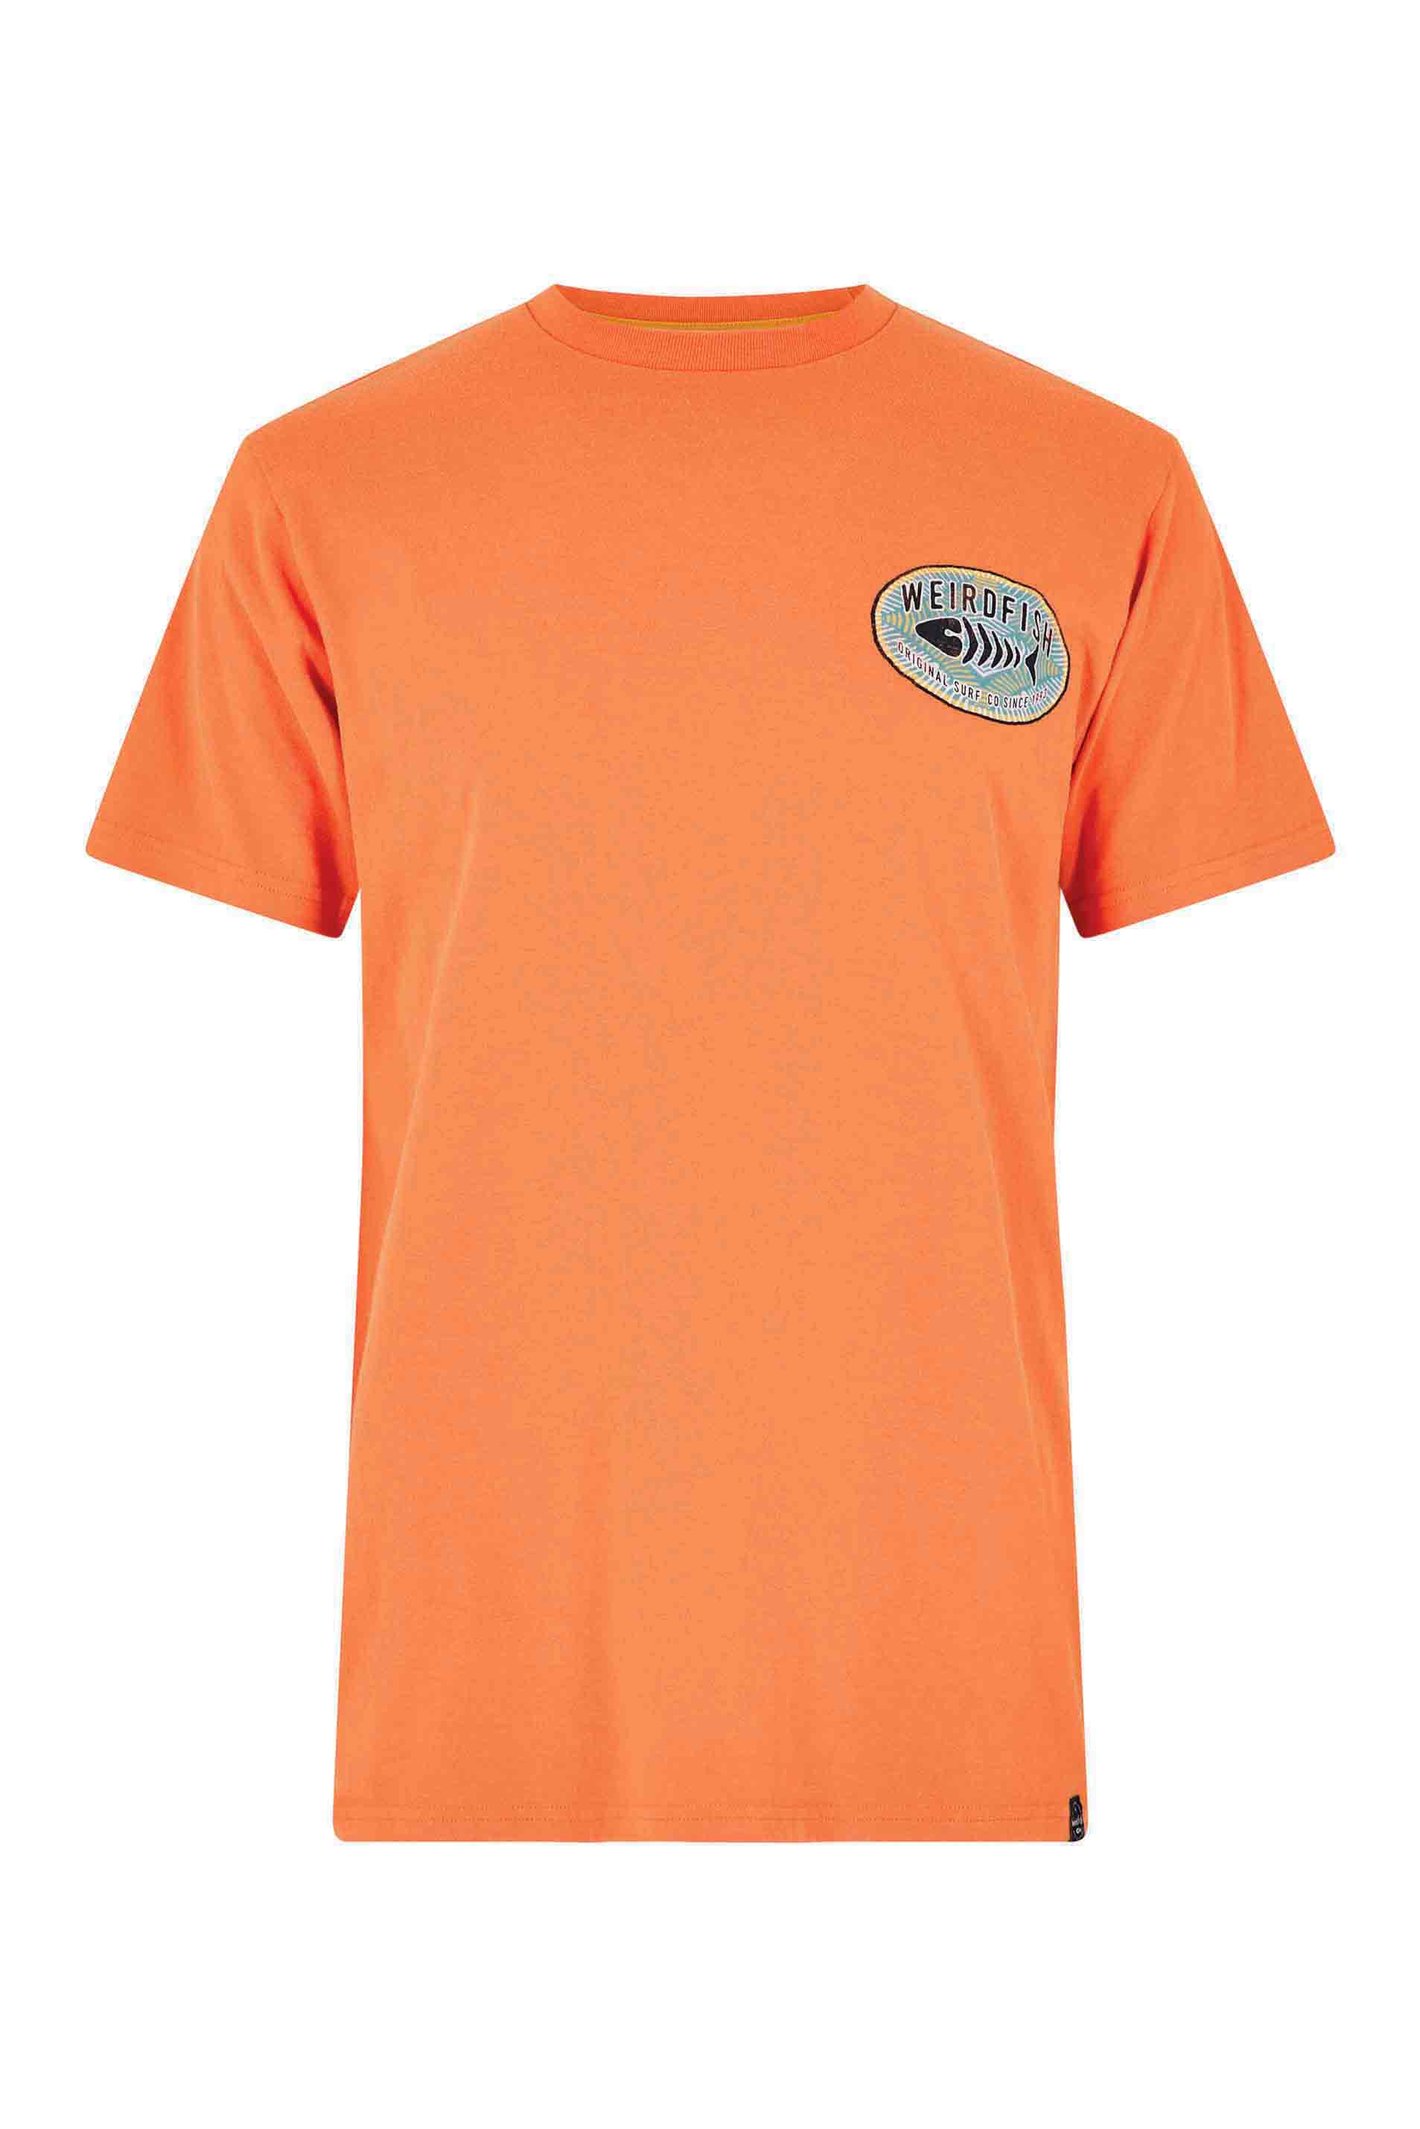 Weird Fish Original Surf Graphic T-Shirt Mango Size 3XL